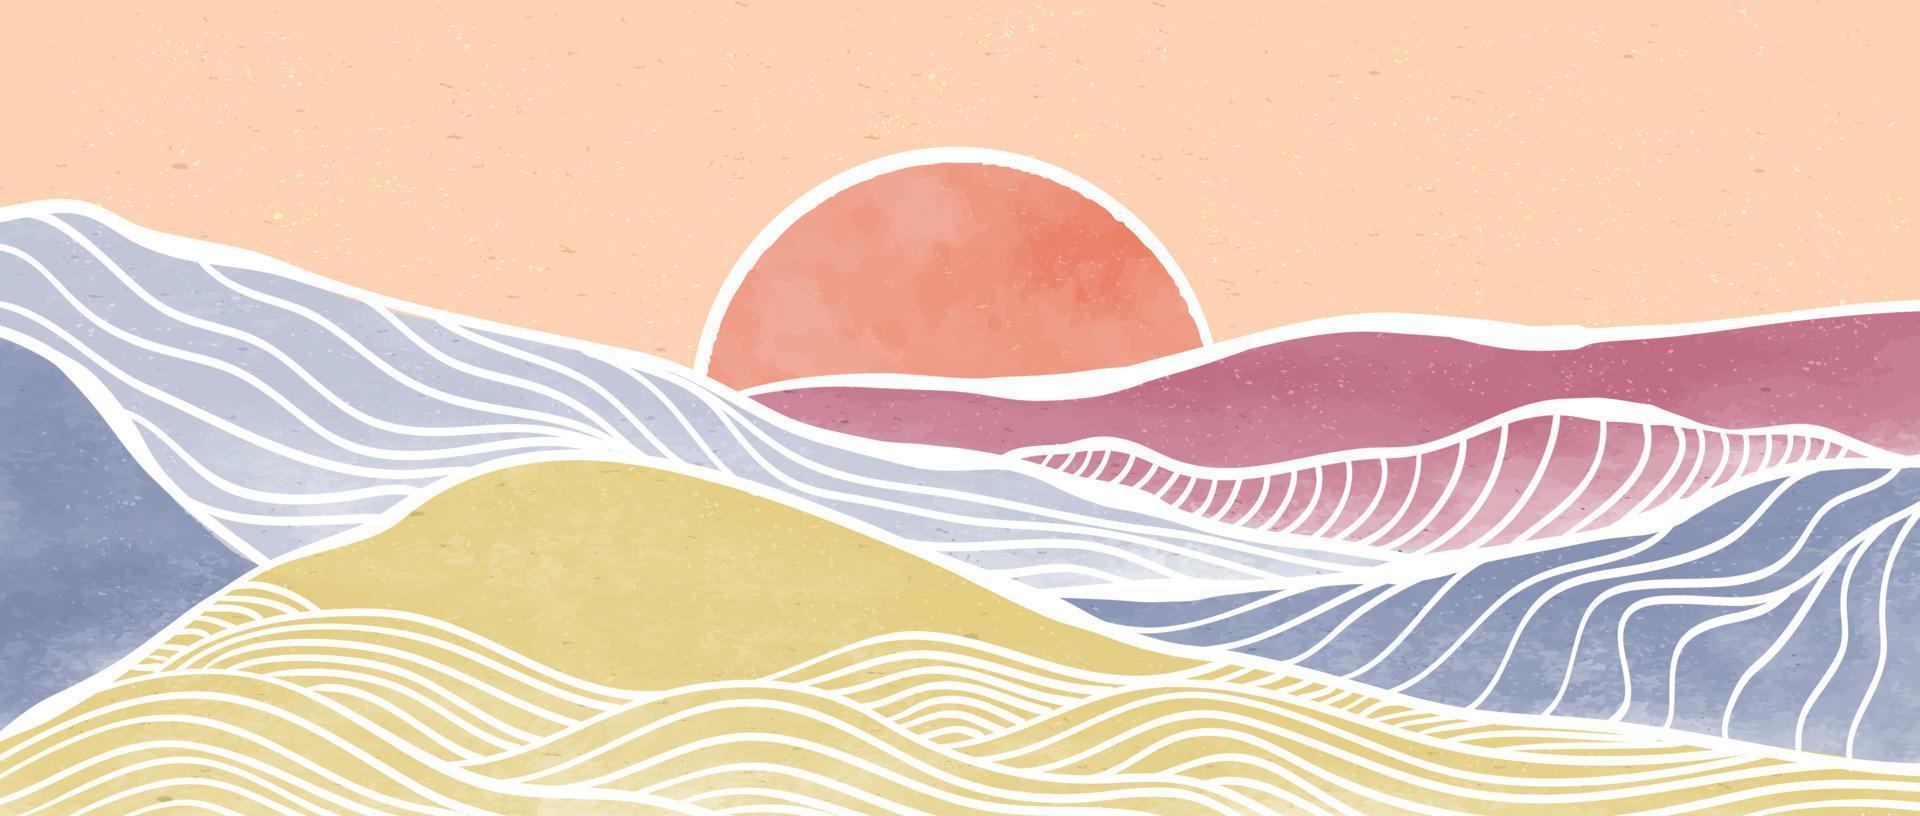 kreativa minimalistiska moderna färg- och linjekonsttryck. abstrakt havsvåg och berg samtida estetiska bakgrunder landskap. med hav, skyline, våg. vektor illustrationer